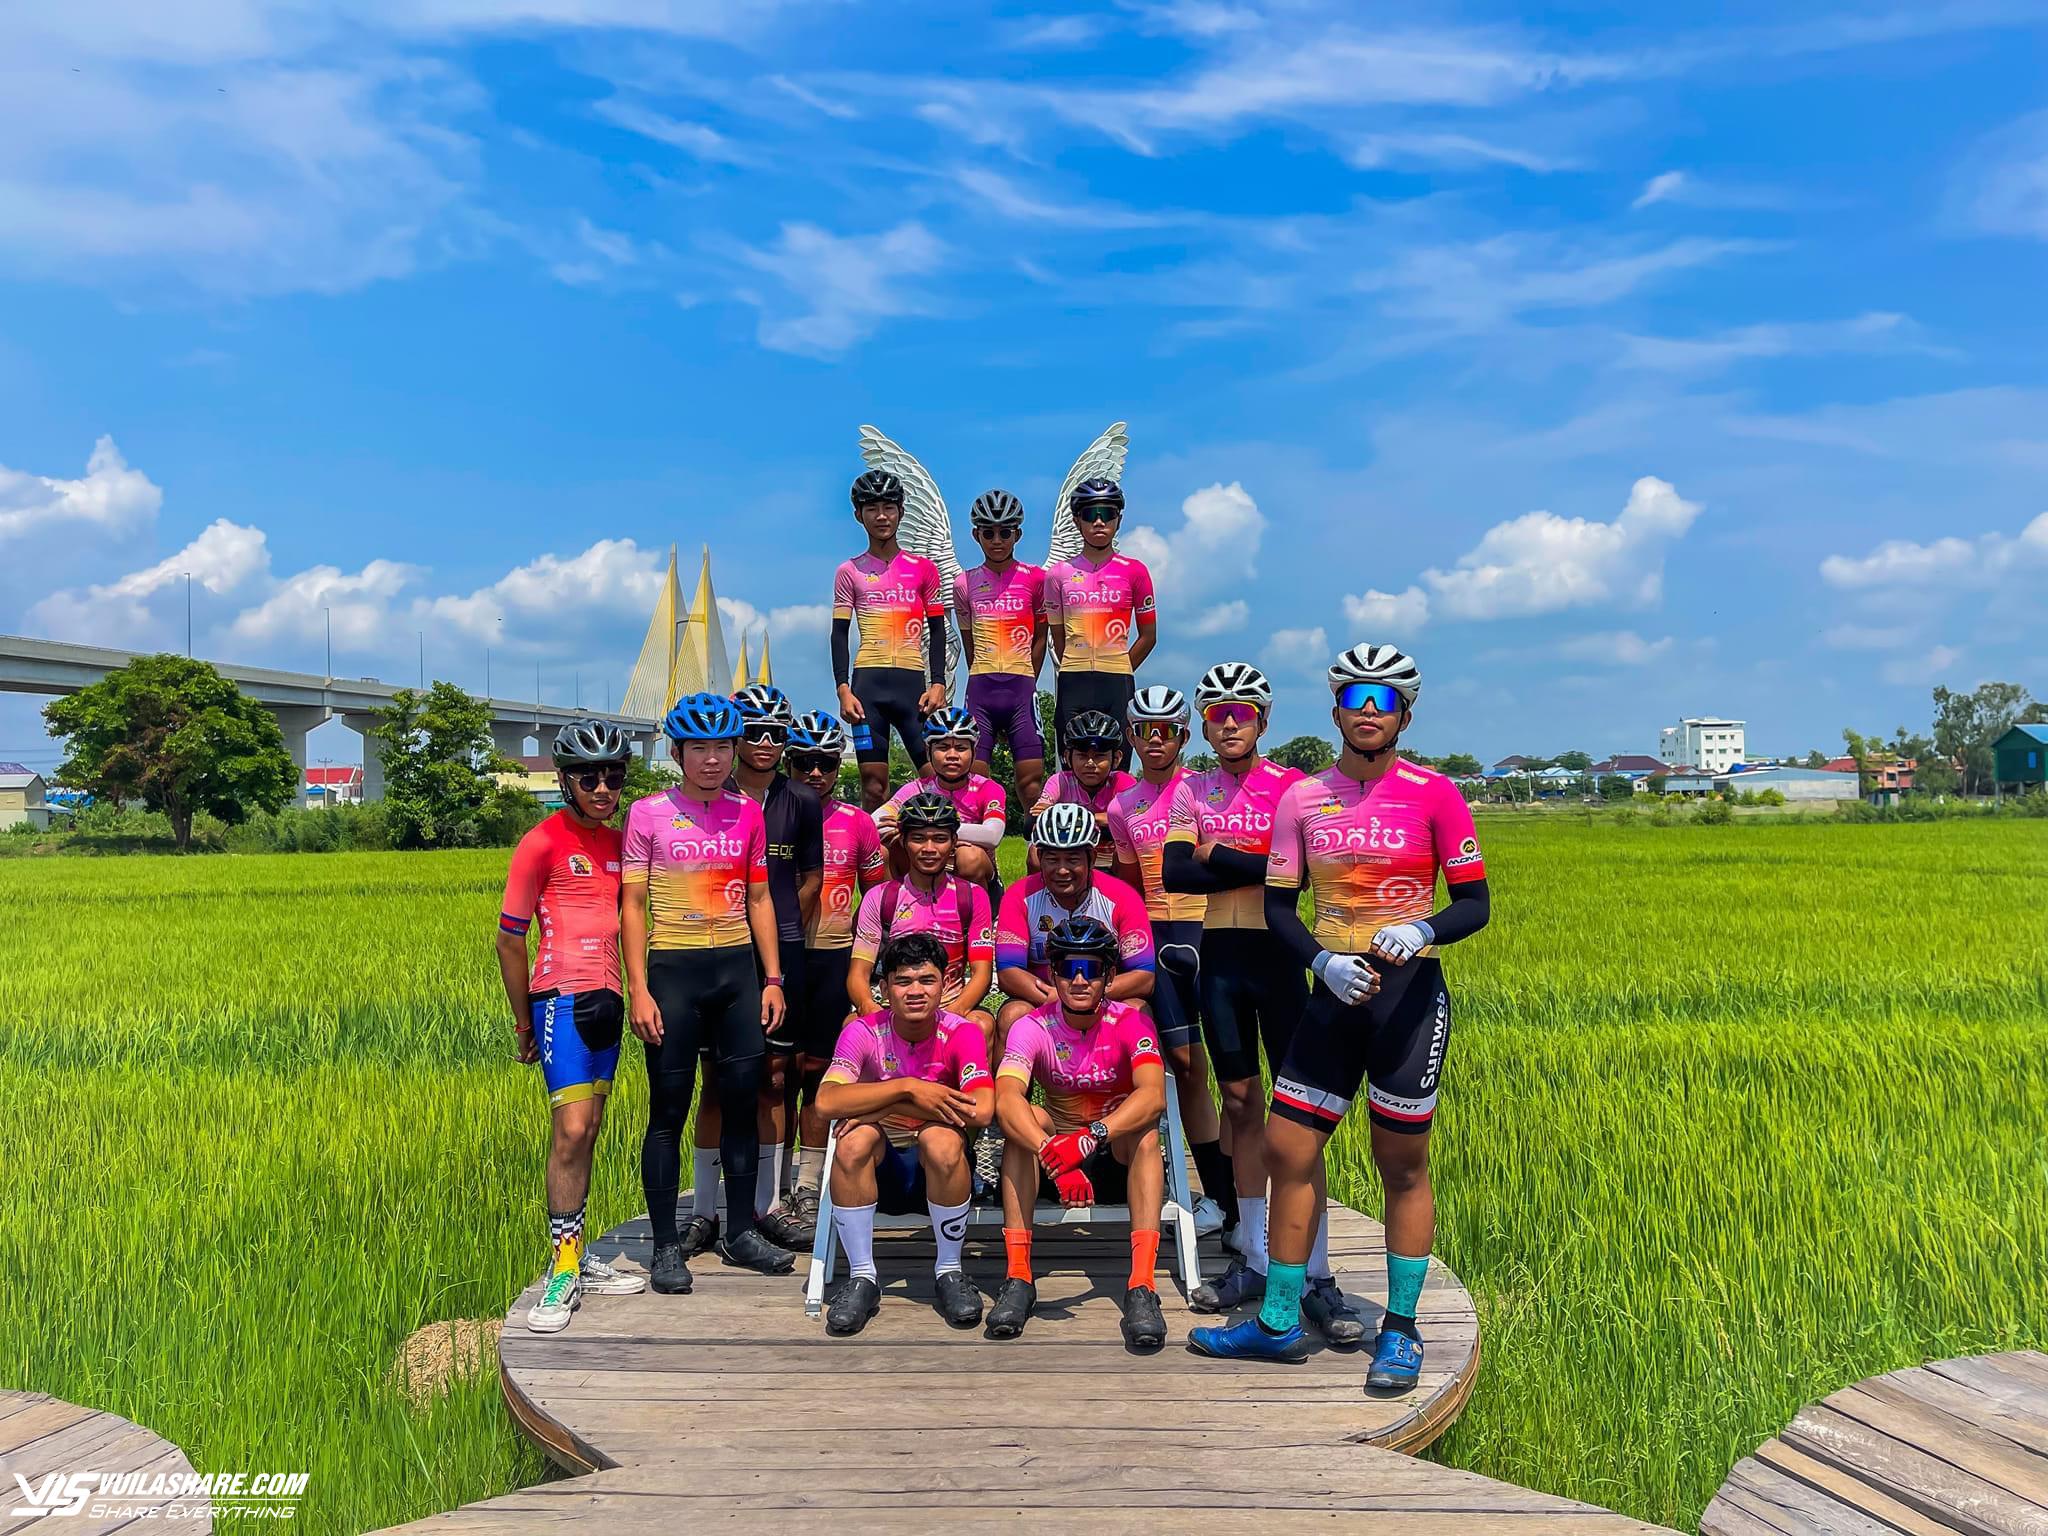 391 VĐV tham dự Ngày hội đạp xe Vì hòa bình tại Quảng Trị, hứa hẹn sôi động- Ảnh 5.